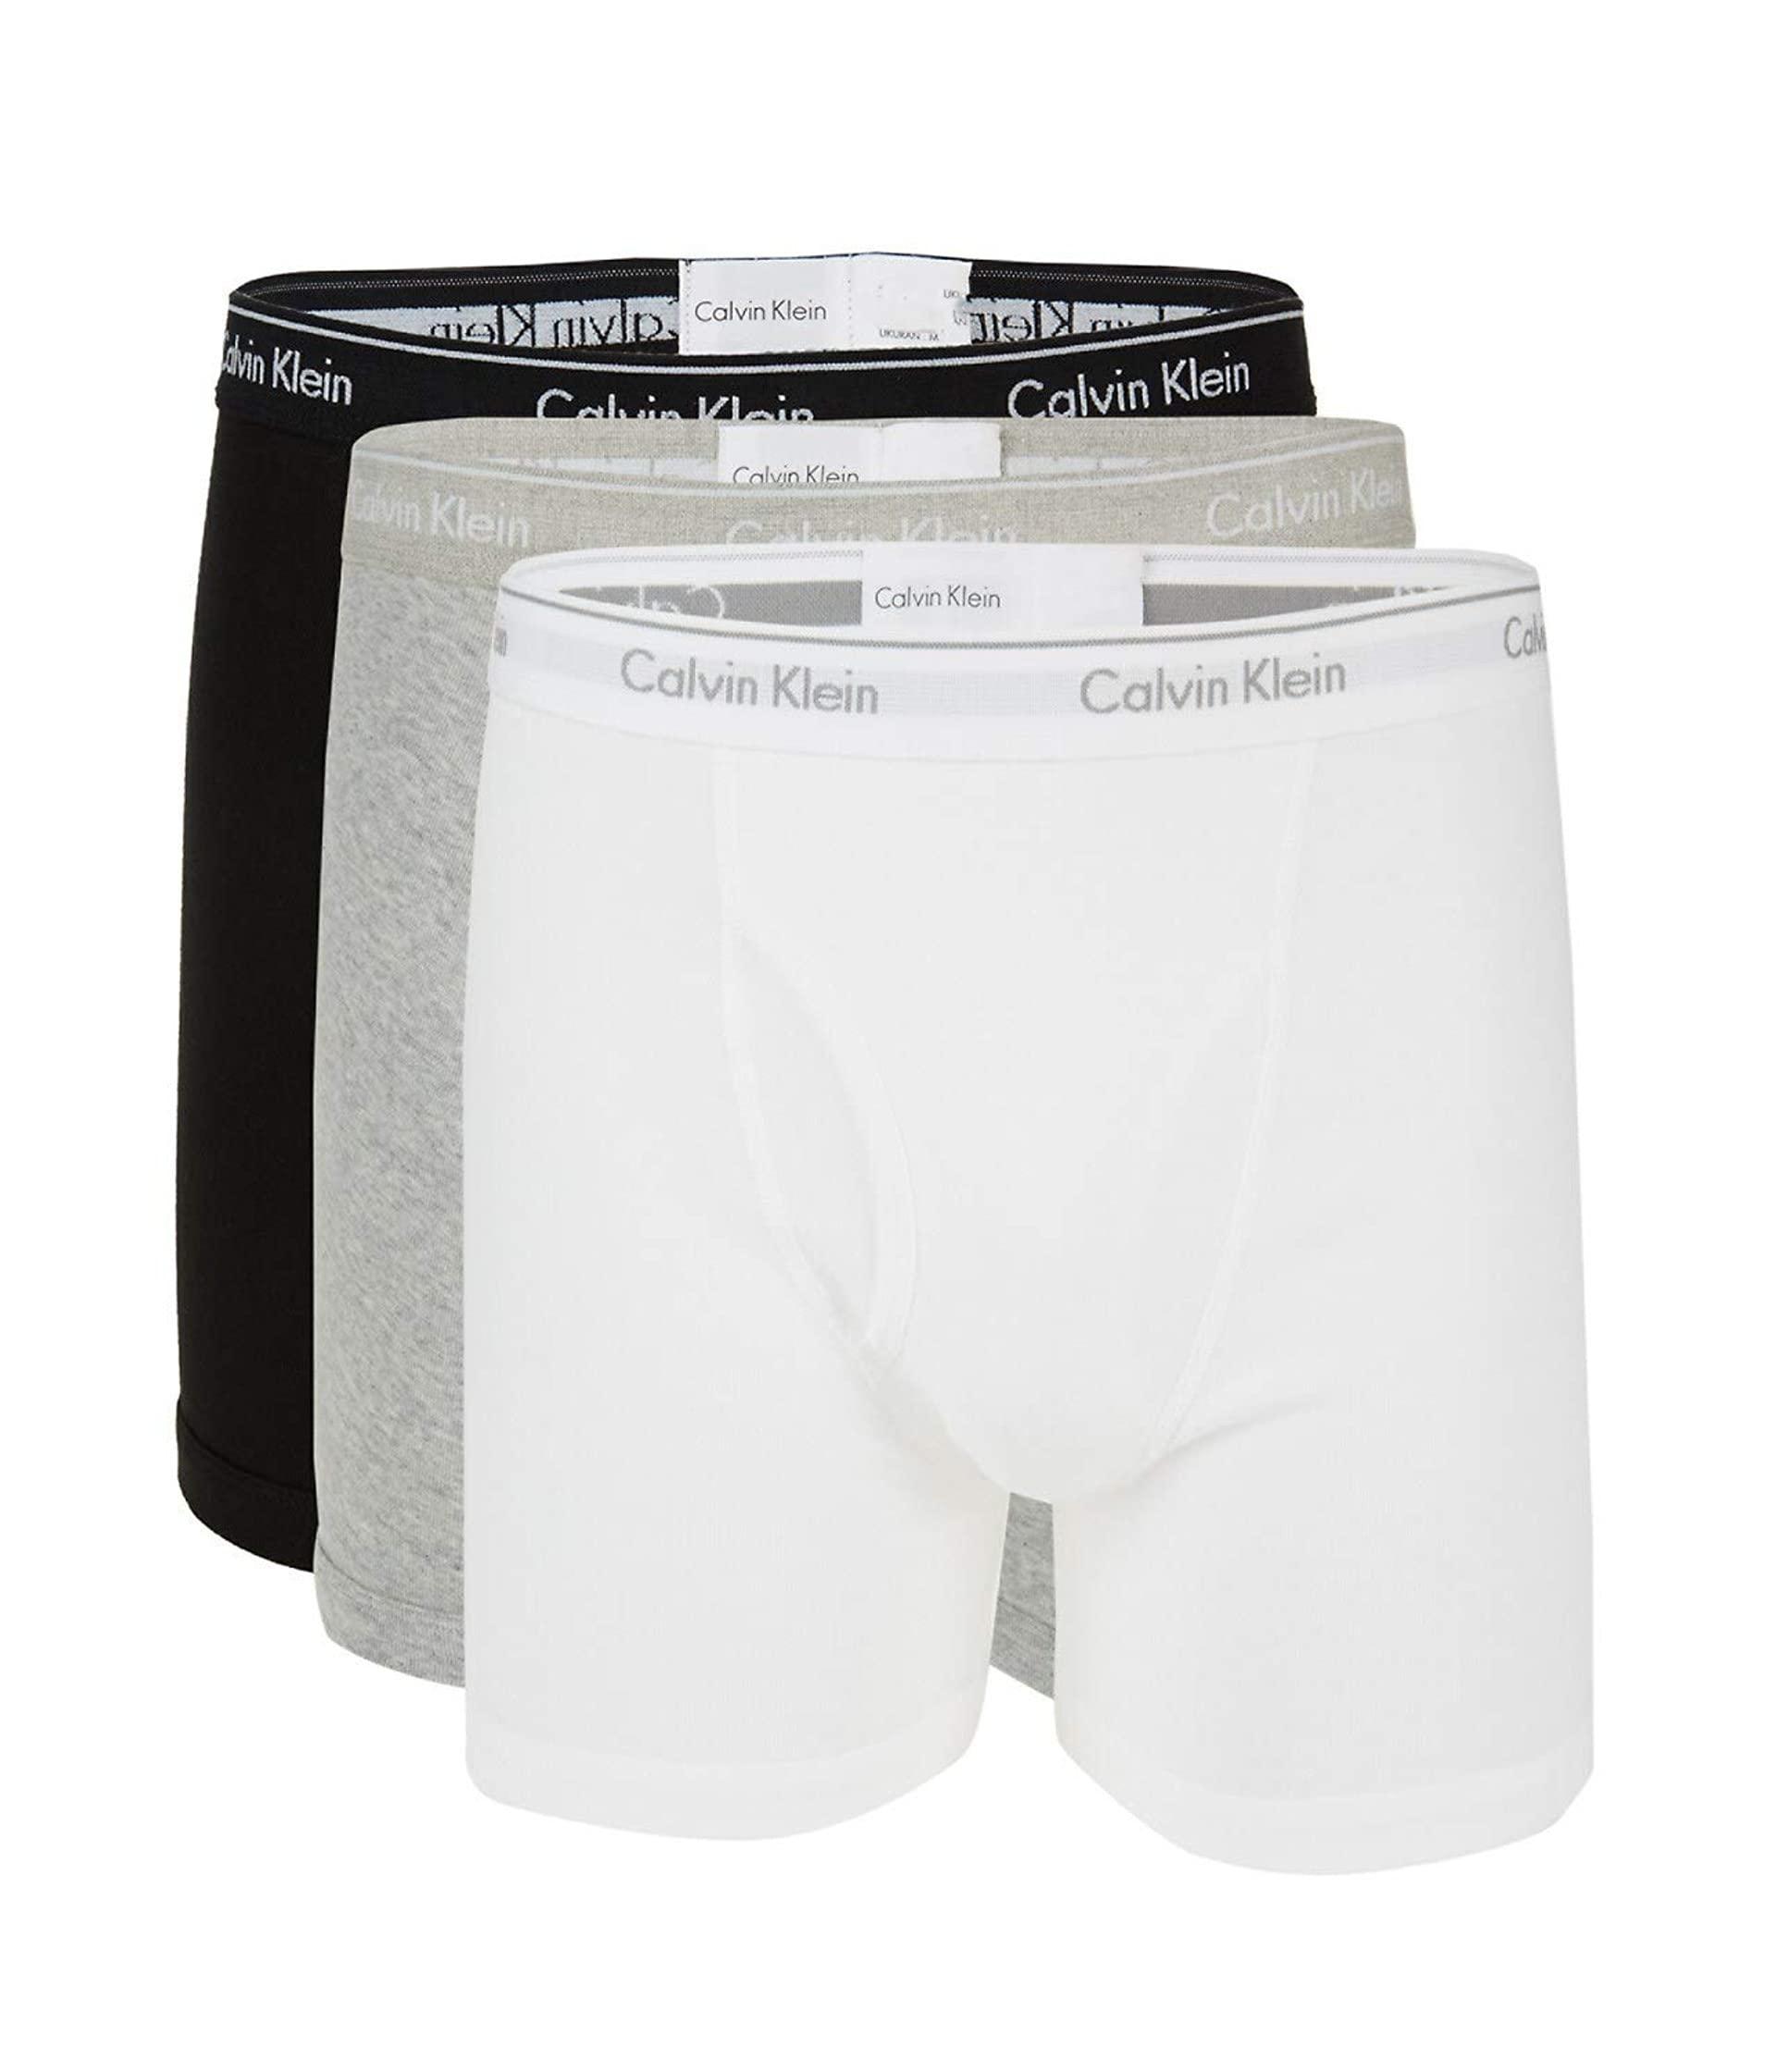 Descubrir 81+ imagen calvin klein 100 cotton underwear